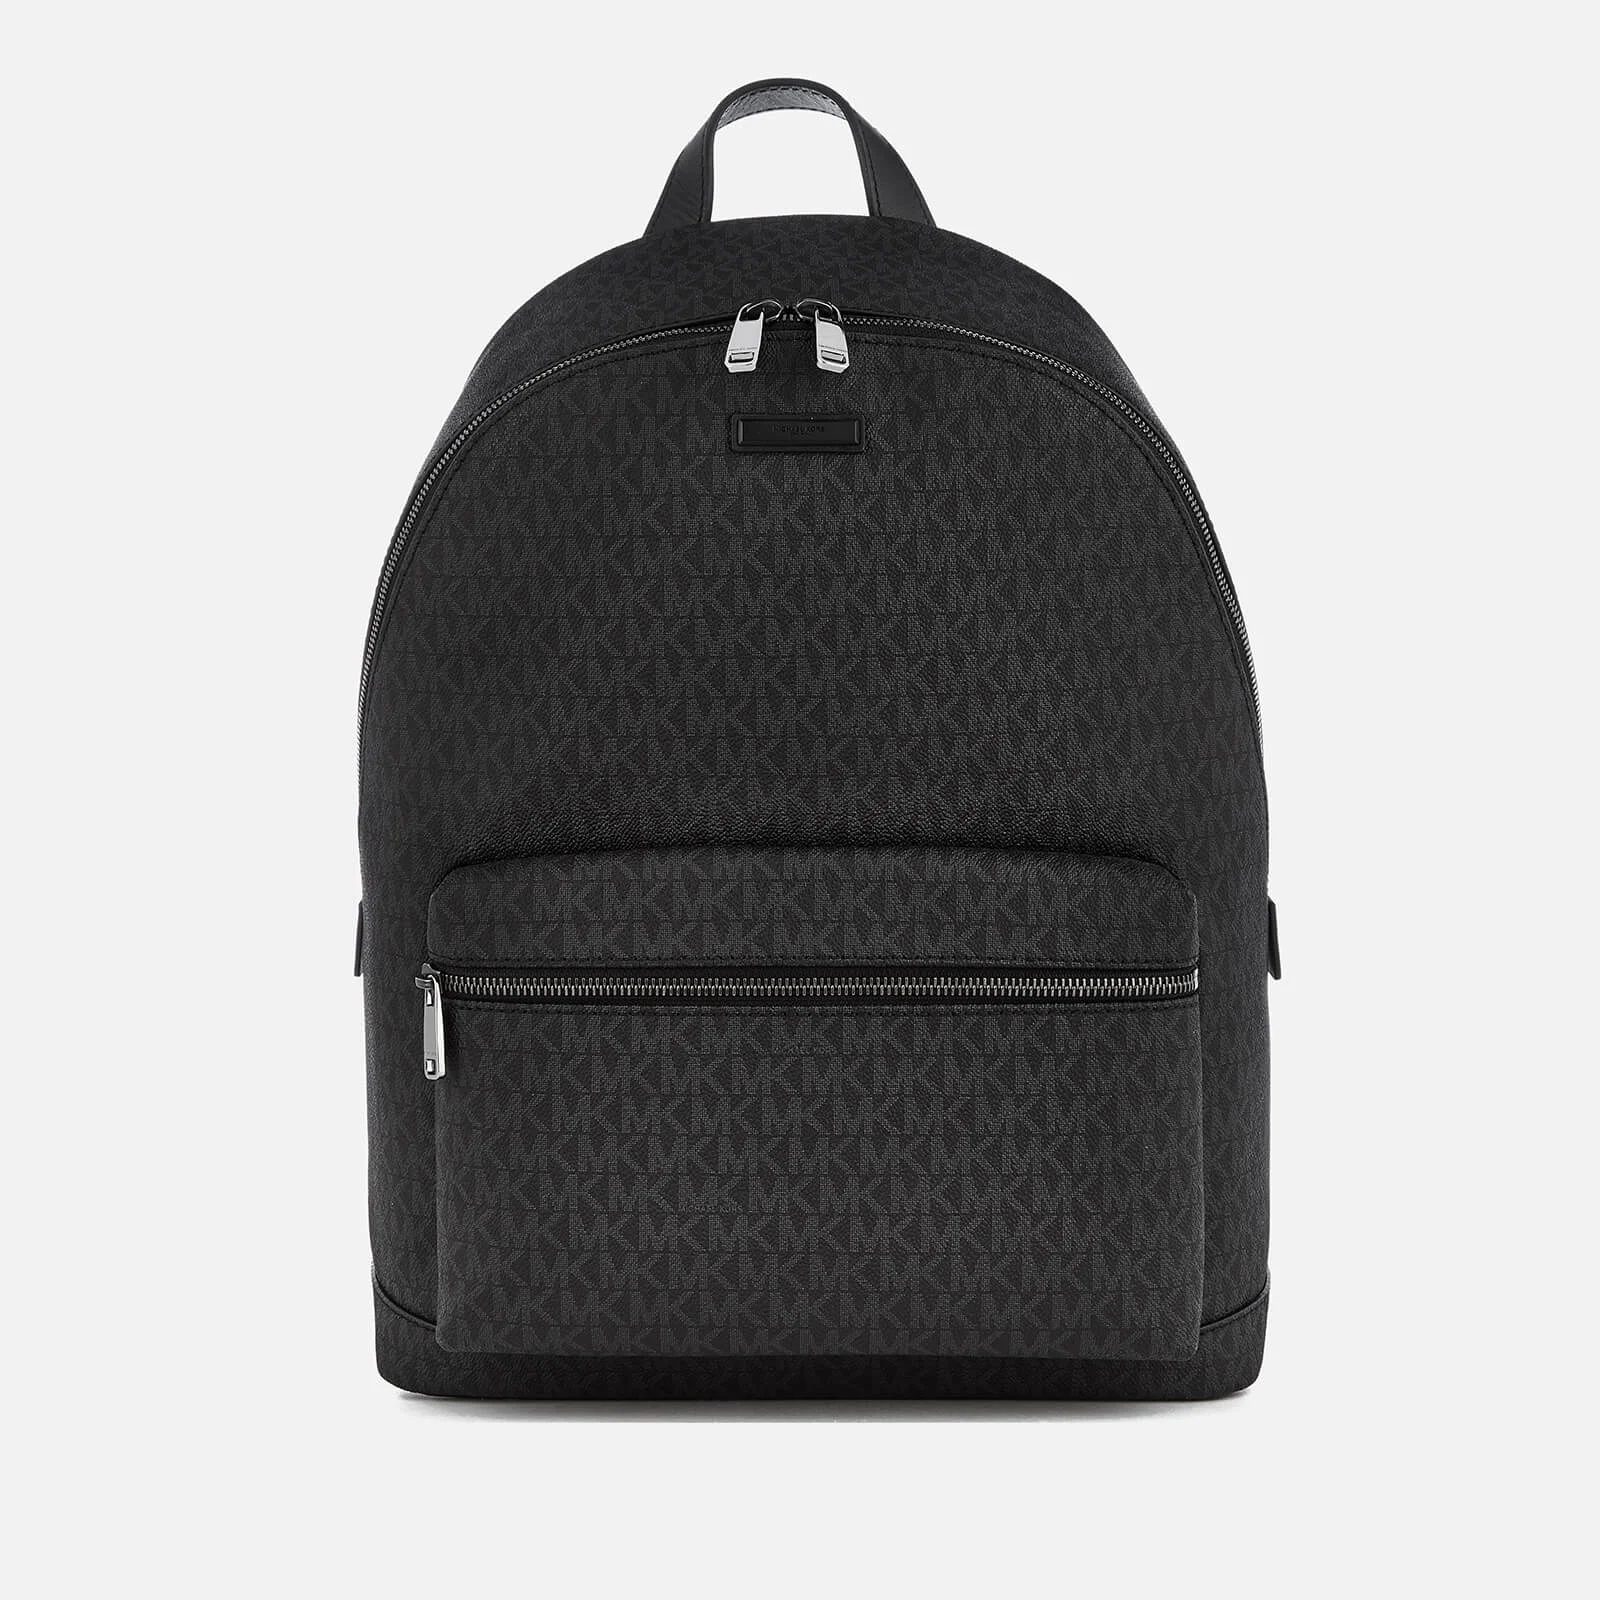 Michael Kors Men's Jet Set Logo Backpack - Black Image 1